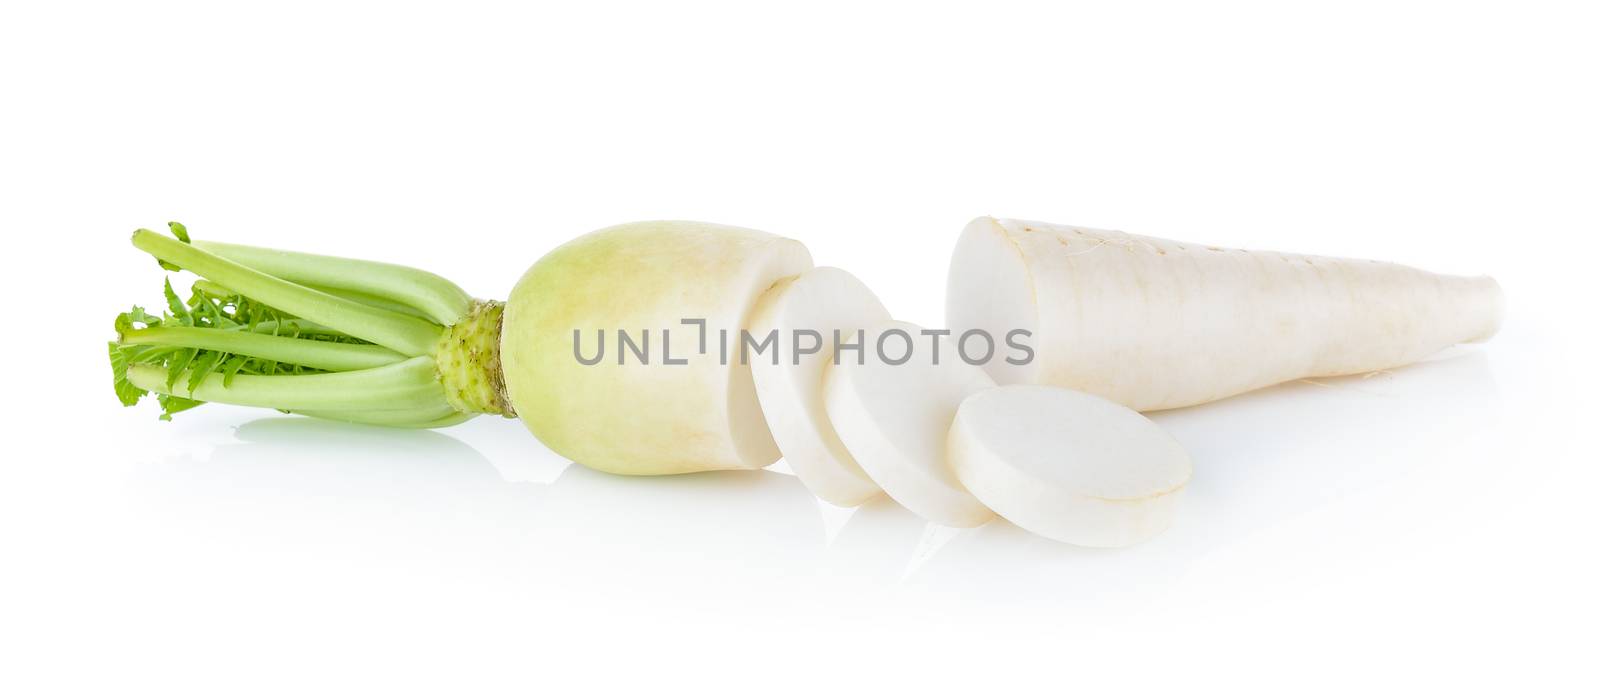 radish on white background by sommai